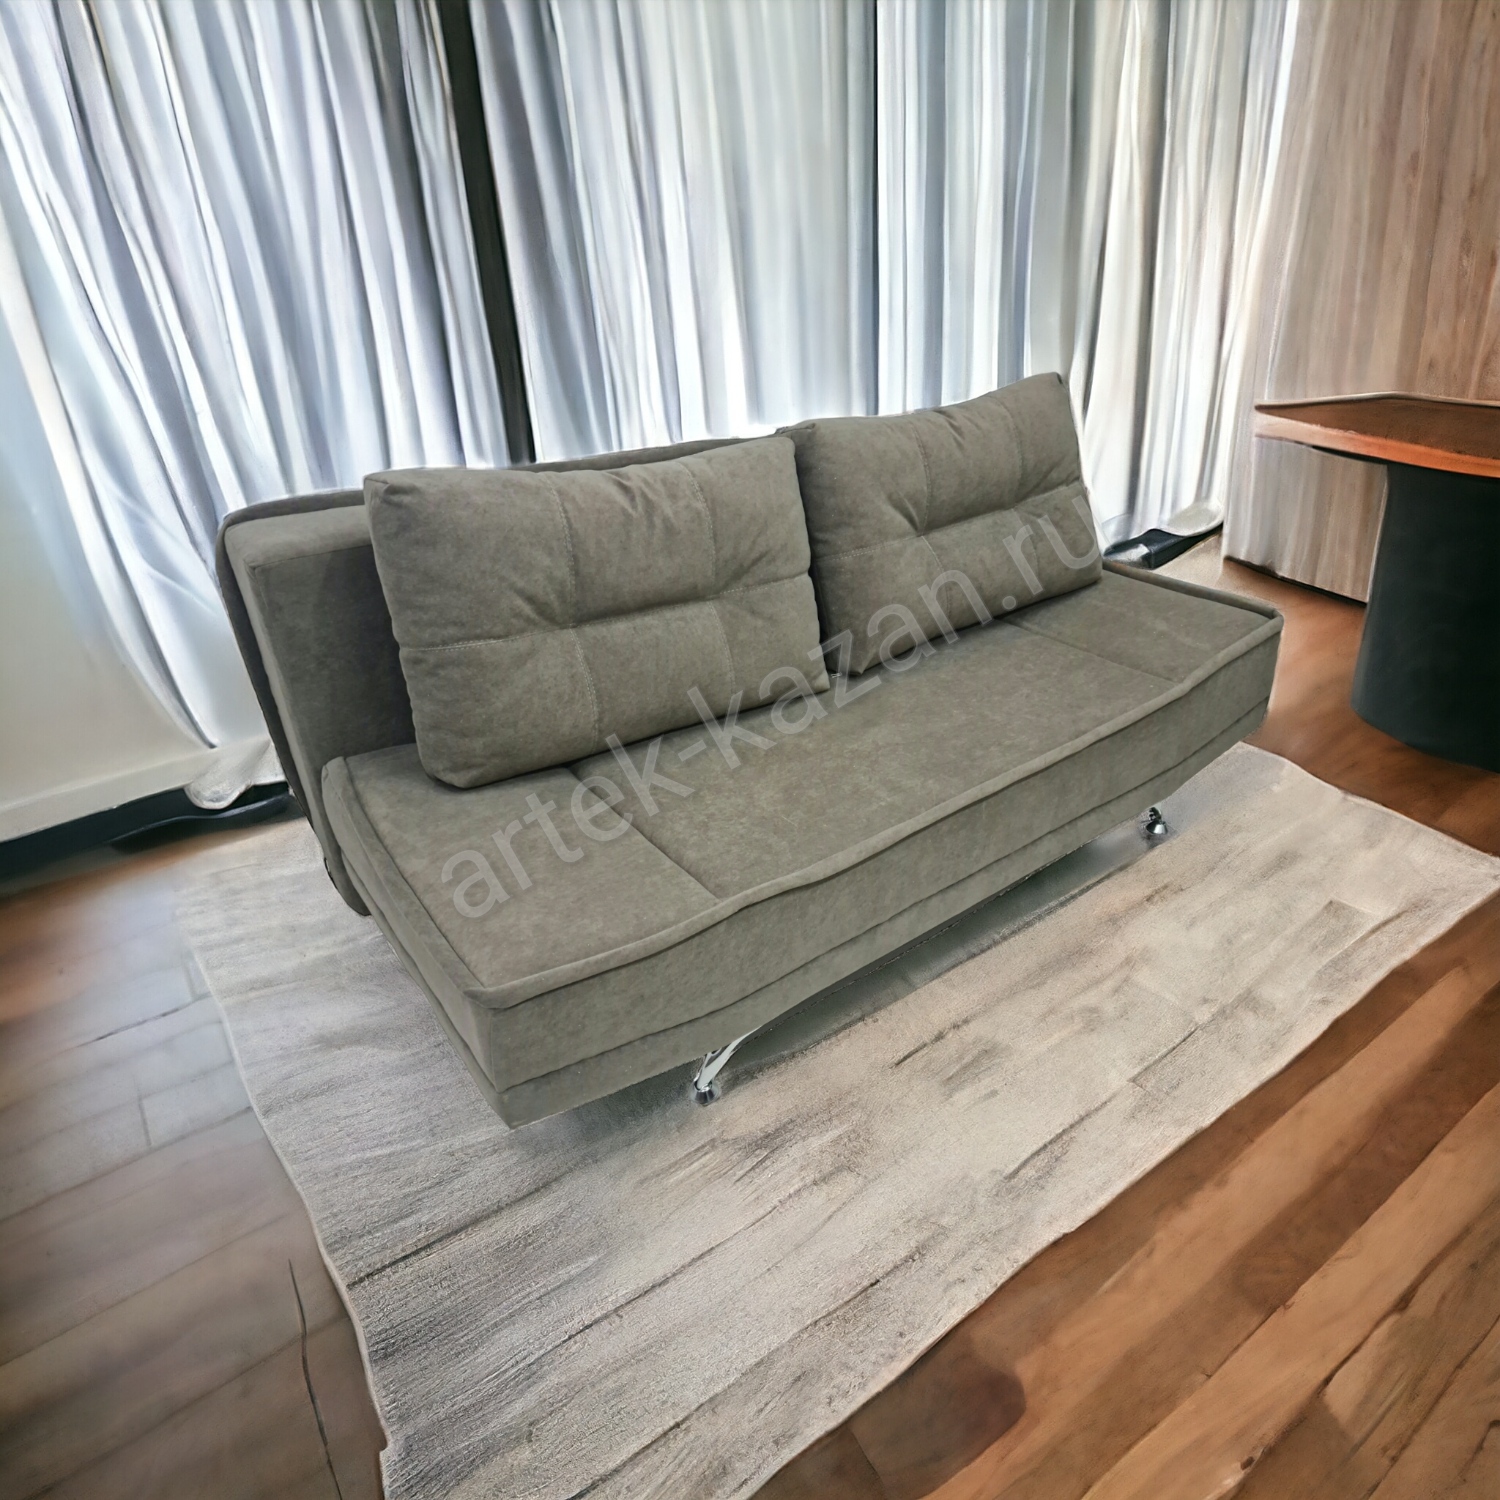 Диван еврокнижка -Энавер- микровелюр РС серо-коричневый,  цена 16000руб. Купить недорогой диван по низкой цене от производителя можно у нас.